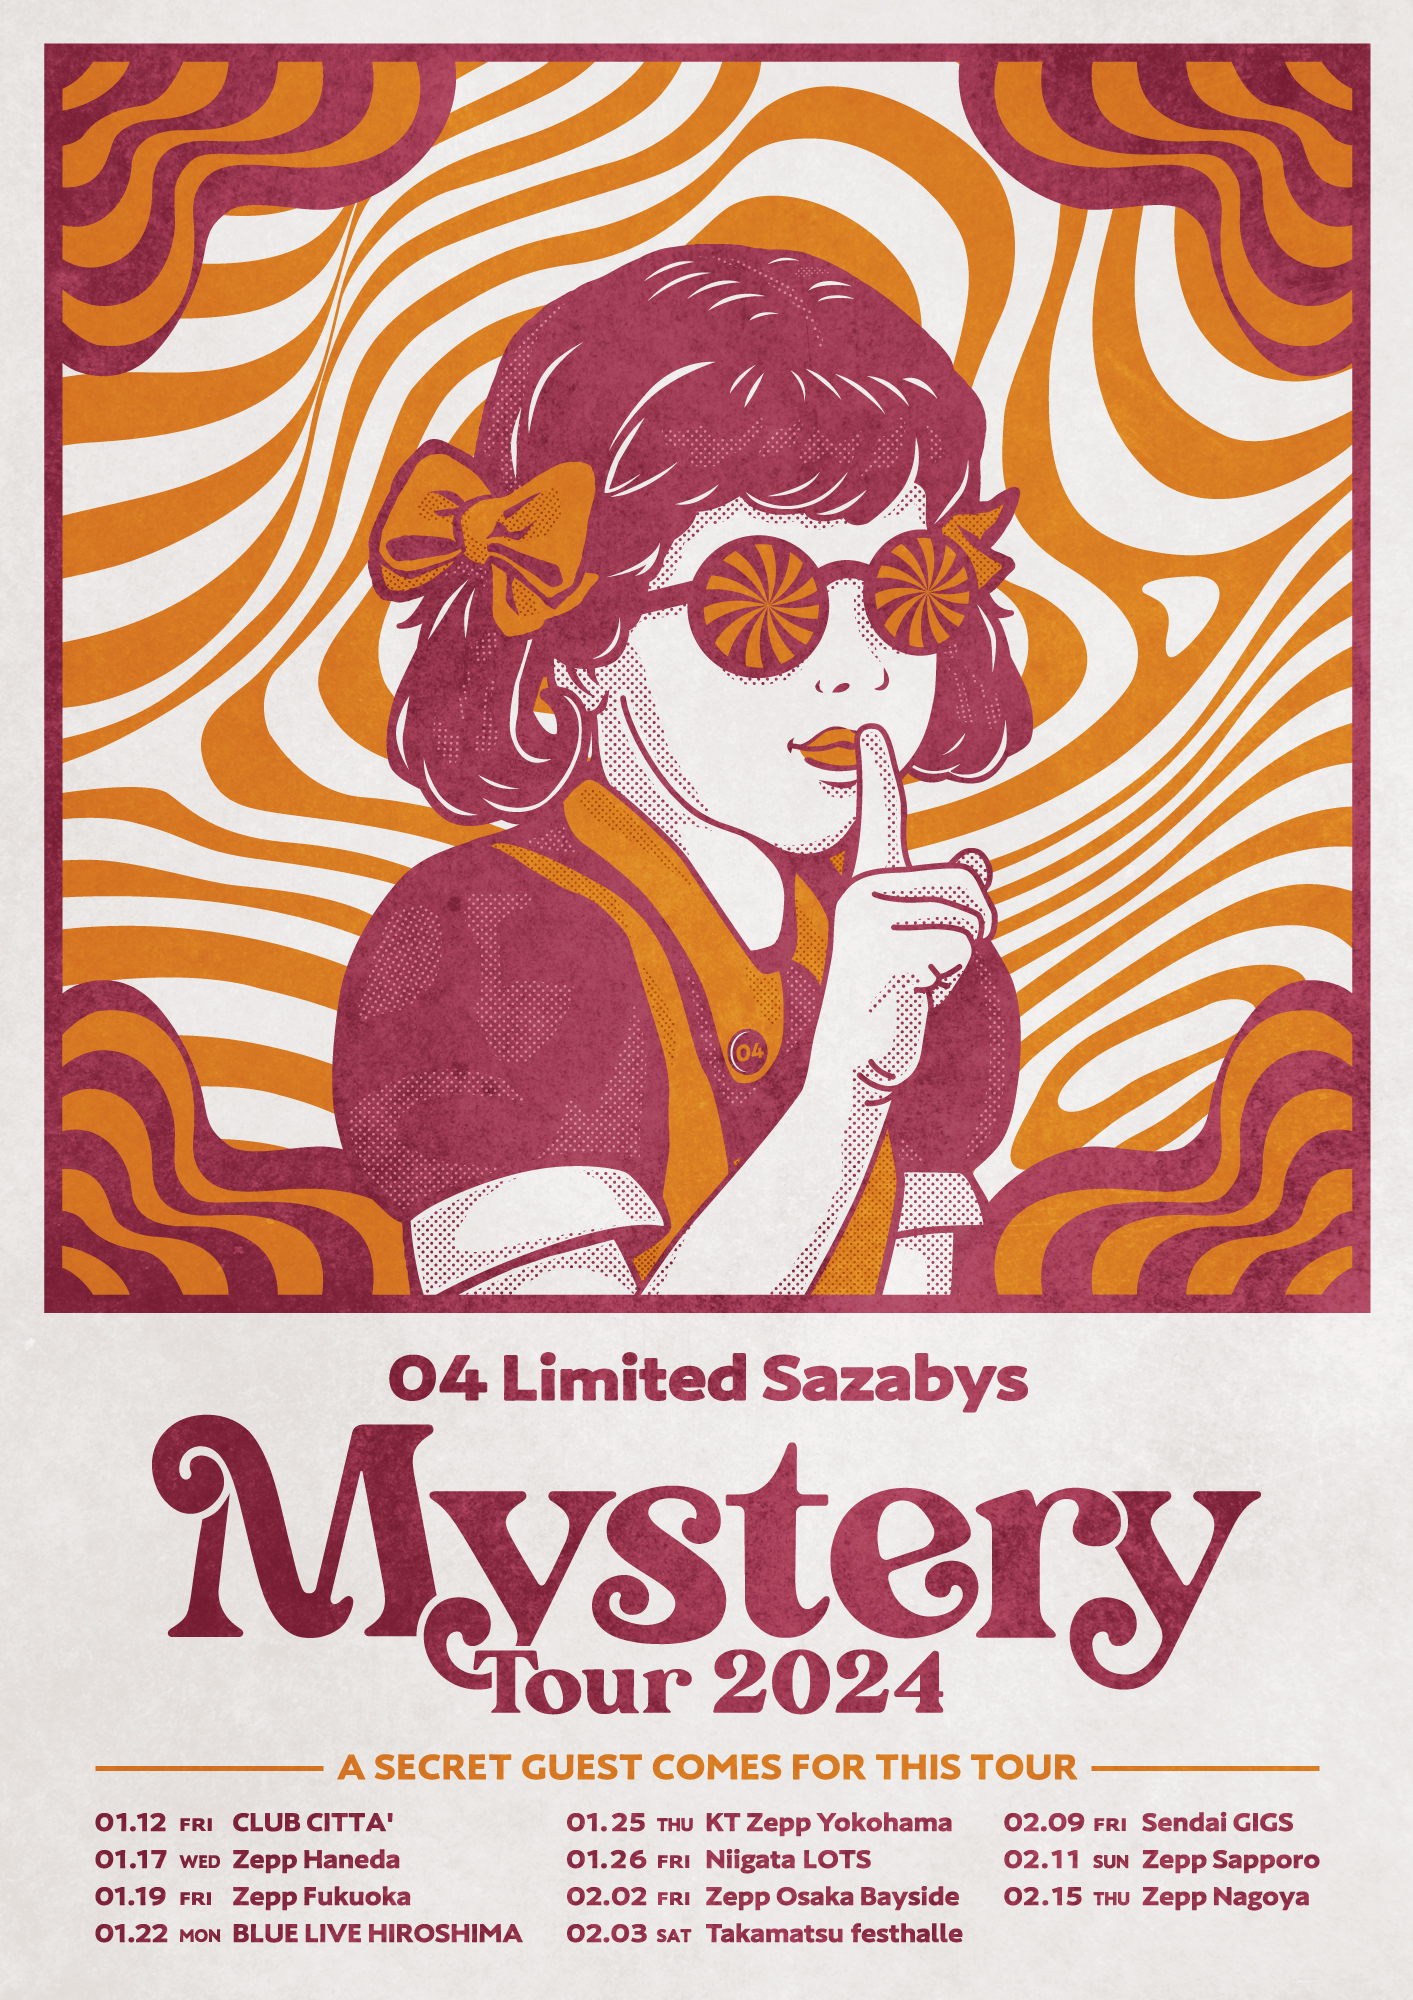 【愛知】04 Limited Sazabys "MYSTERY TOUR 2024" (Zepp Nagoya)